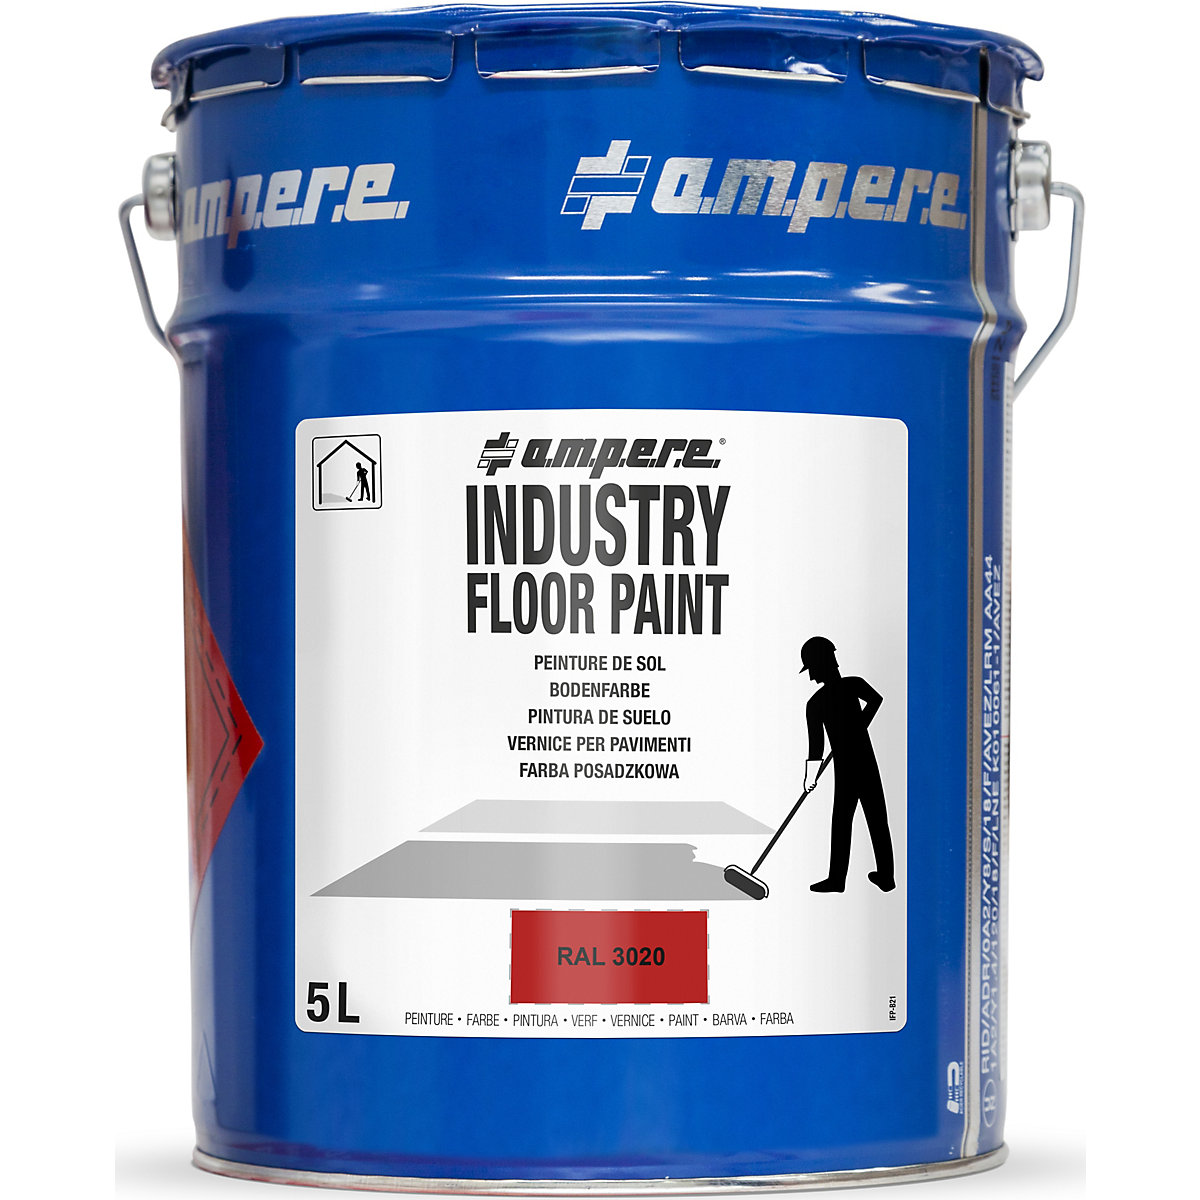 Vloermarkeringsverf Industry Floor Paint® – Ampere, inhoud 5 l, rood-5